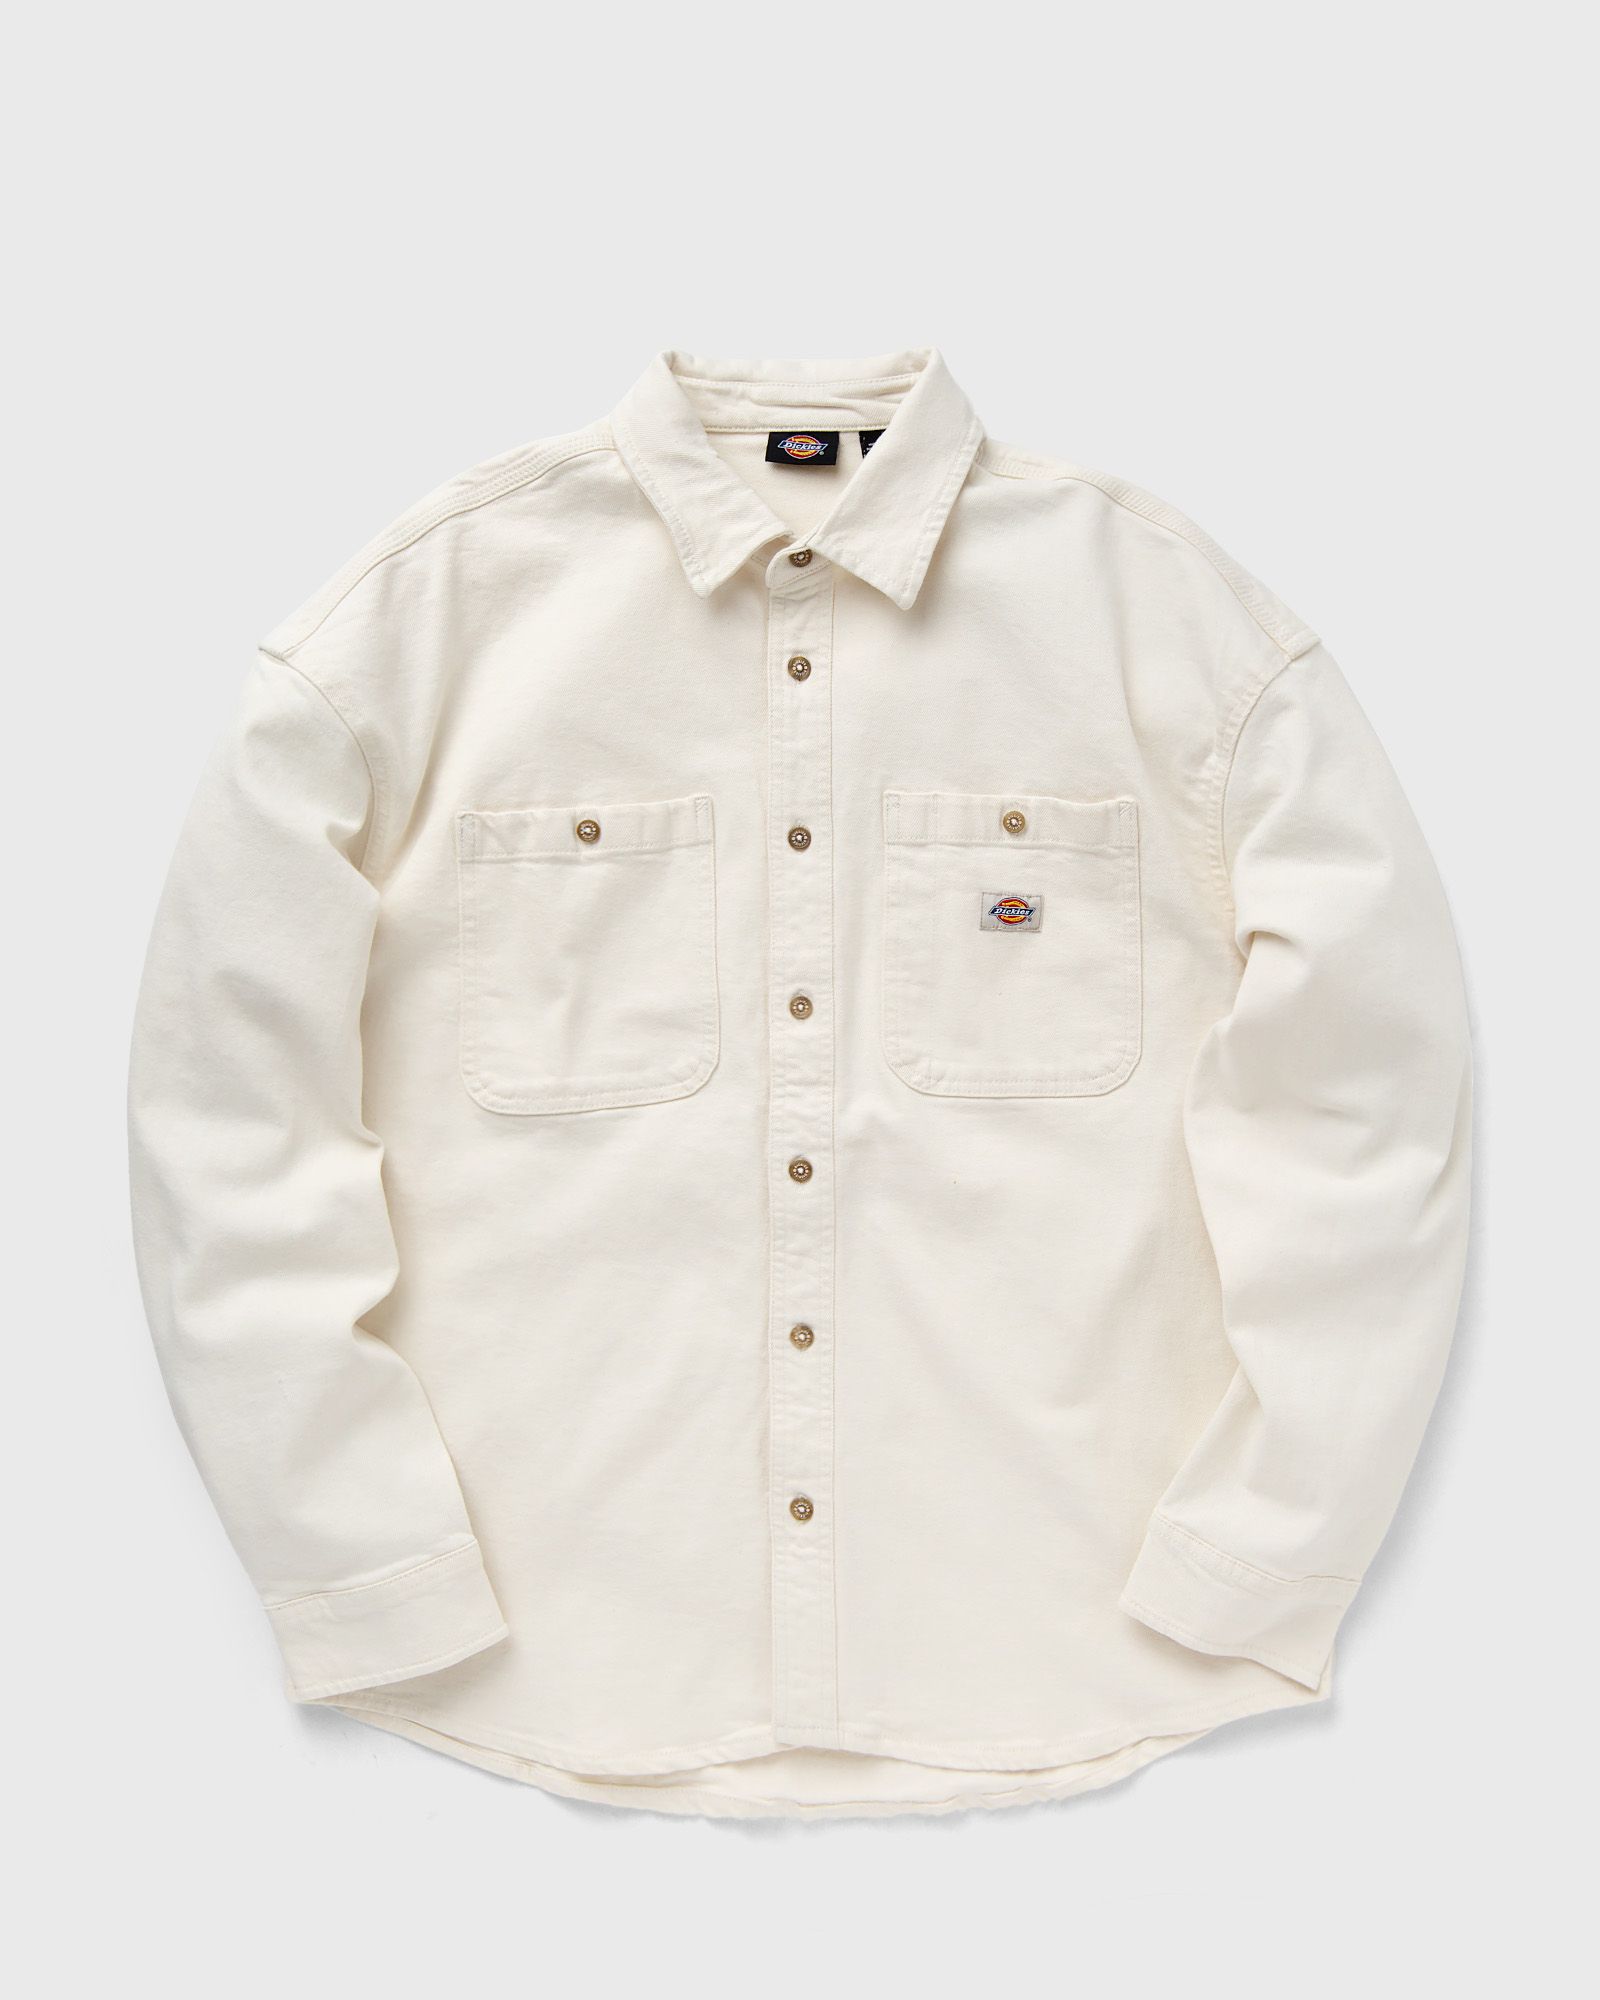 DICKIES - houston shirt men longsleeves white|beige in größe:l